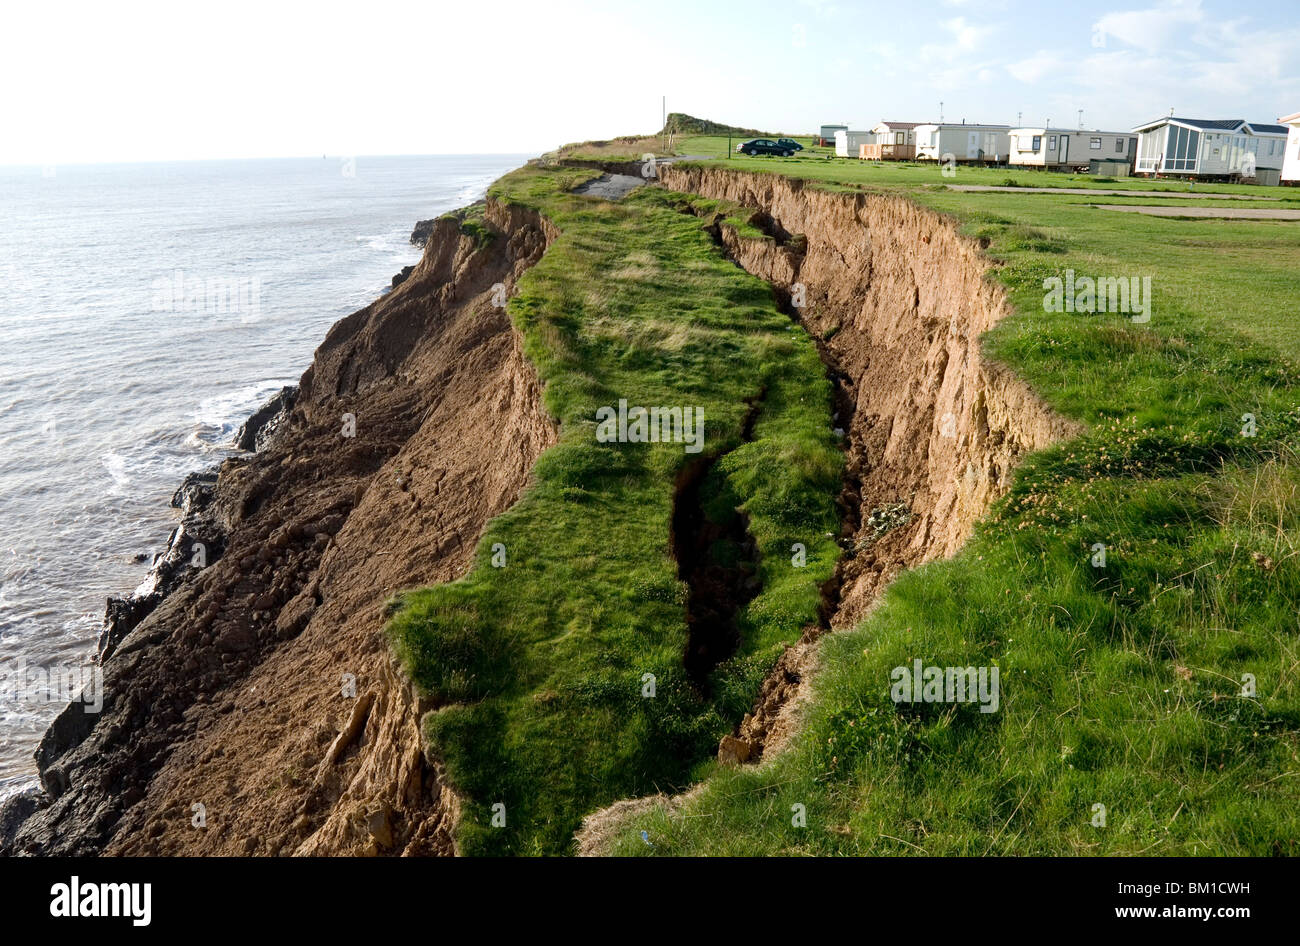 Erosione costiera con active smottamenti in glaciale, Aldbrough, Holderness coast, Humberside, England, Regno Unito, Europa Foto Stock